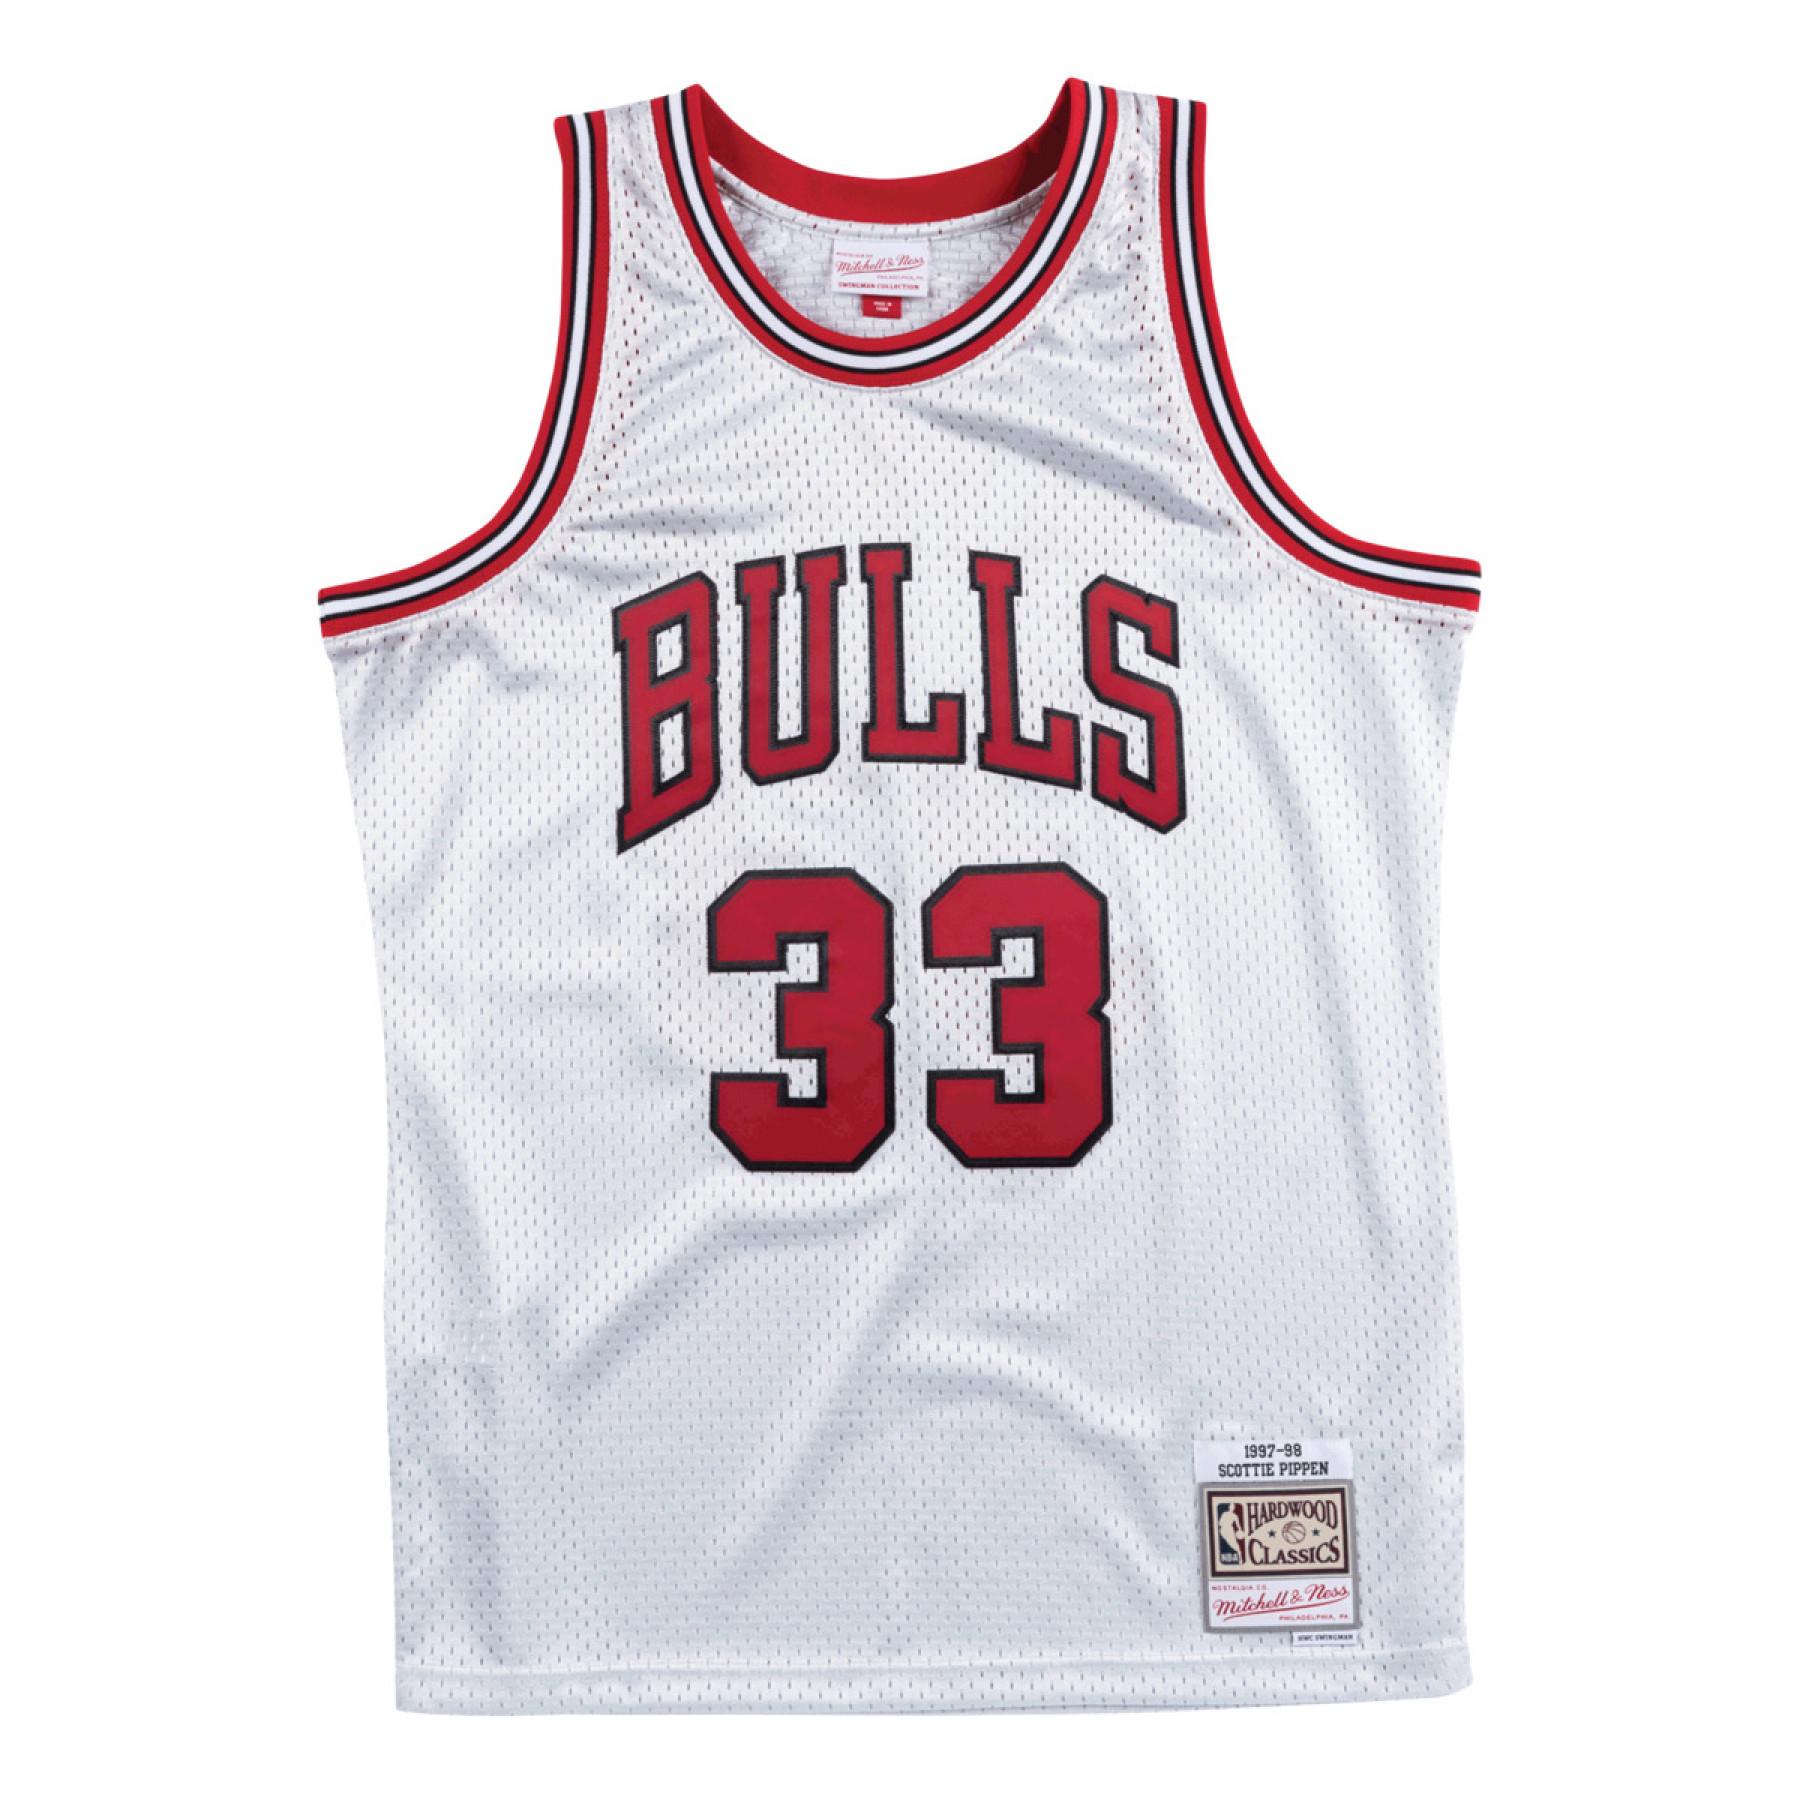 Camisola Chicago Bulls 1997-98 Scottie Pippen Platinum